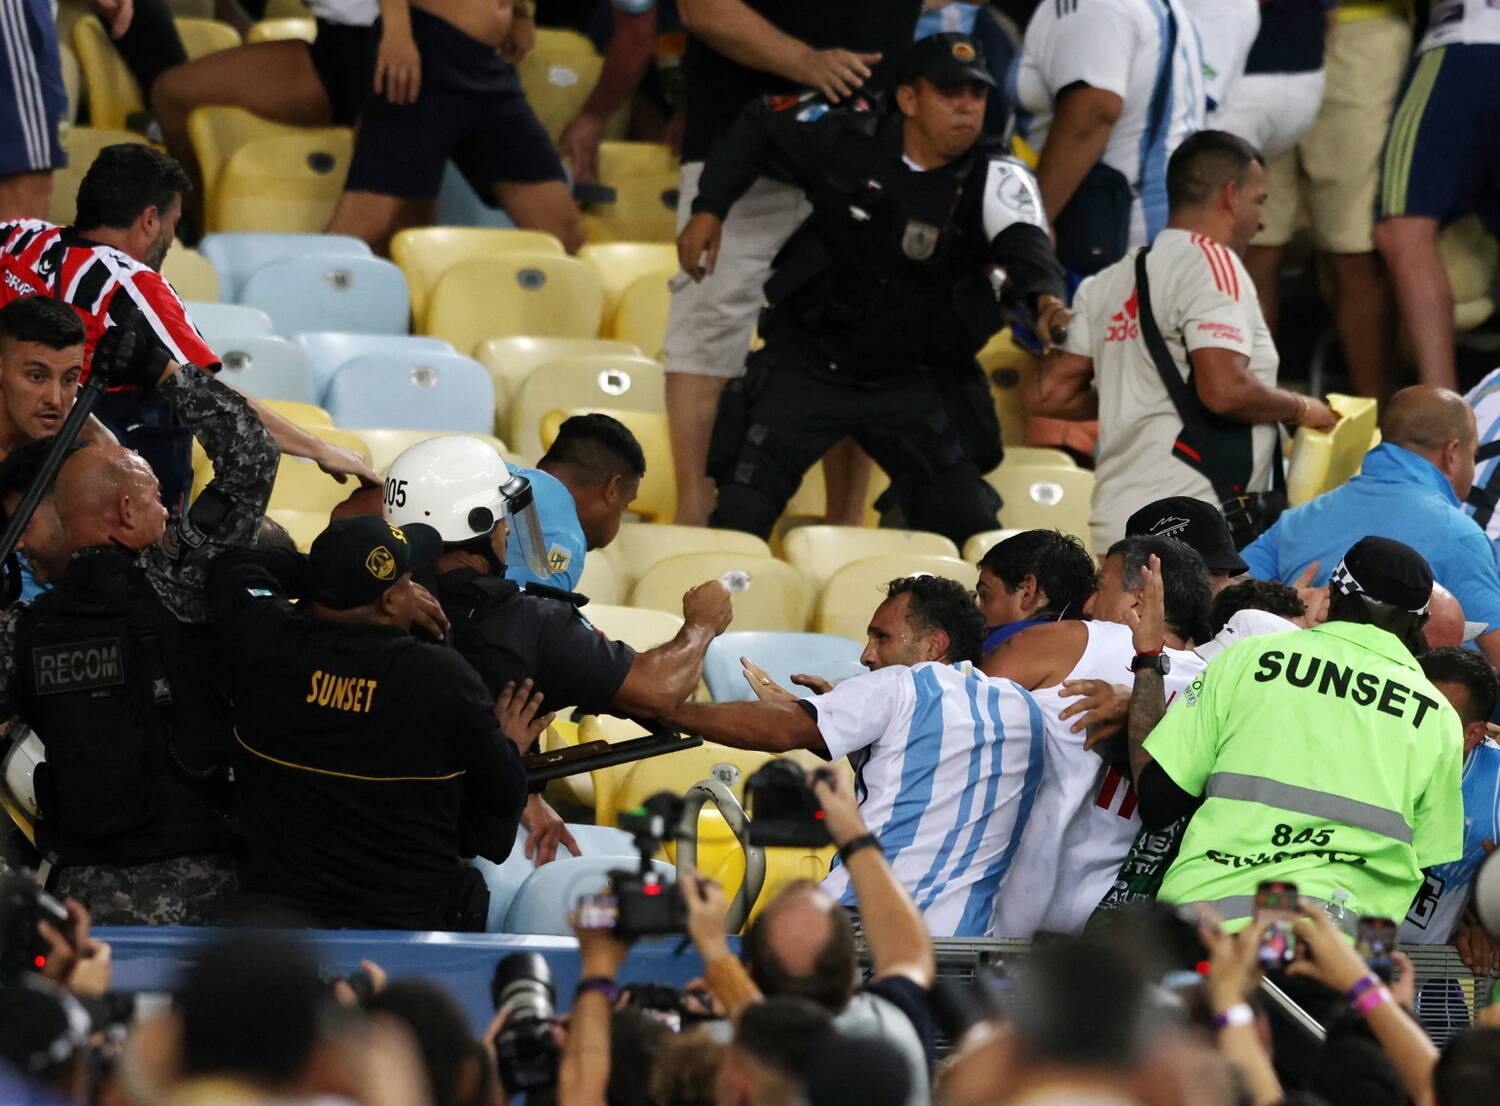 Comandante do BEPE culpa organização da partida Brasil e Argentina por  briga generalizada